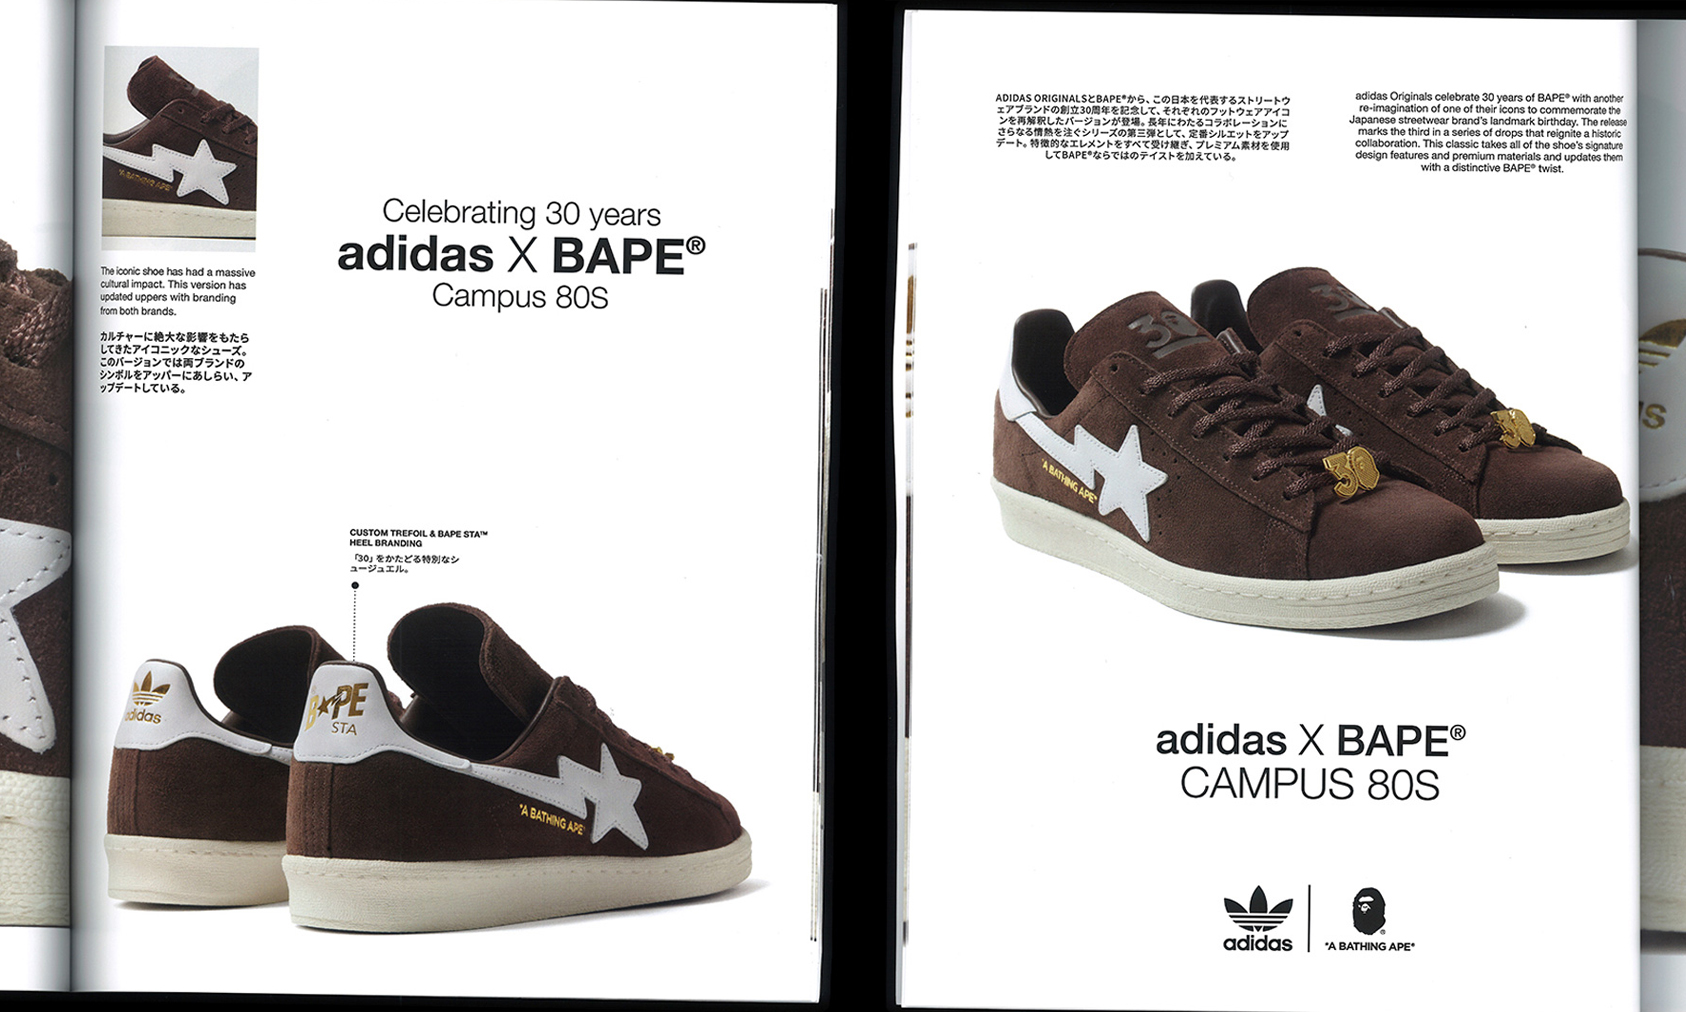 BAPE® x adidas Originals  Campus 80s 合作鞋款即将发售